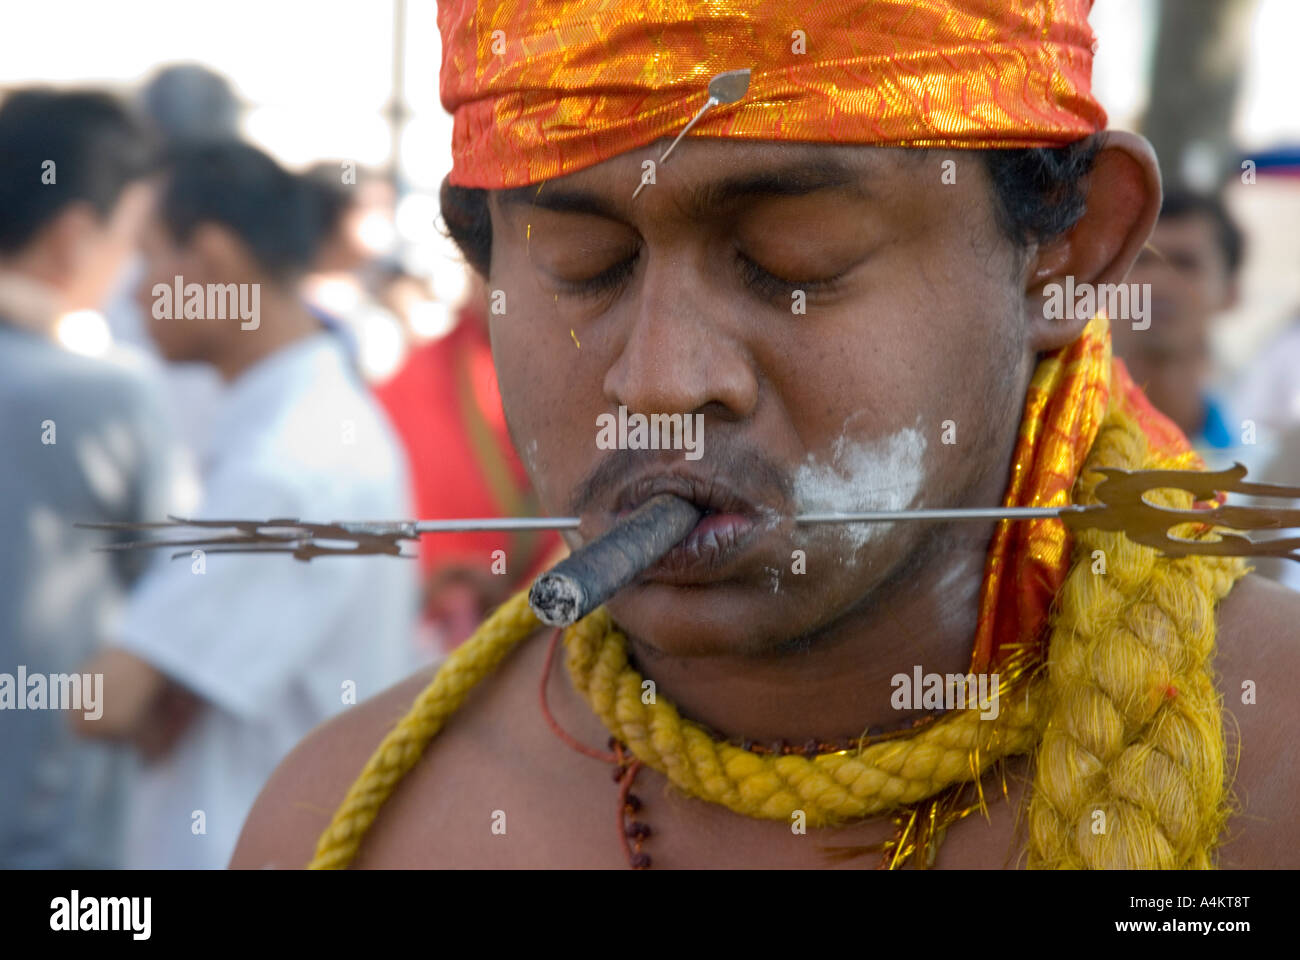 Les Indiens de Malaisie célèbrent Thaipusam à Georgetown Penang. Un dévot fume un chéroot avec son visage percé Banque D'Images